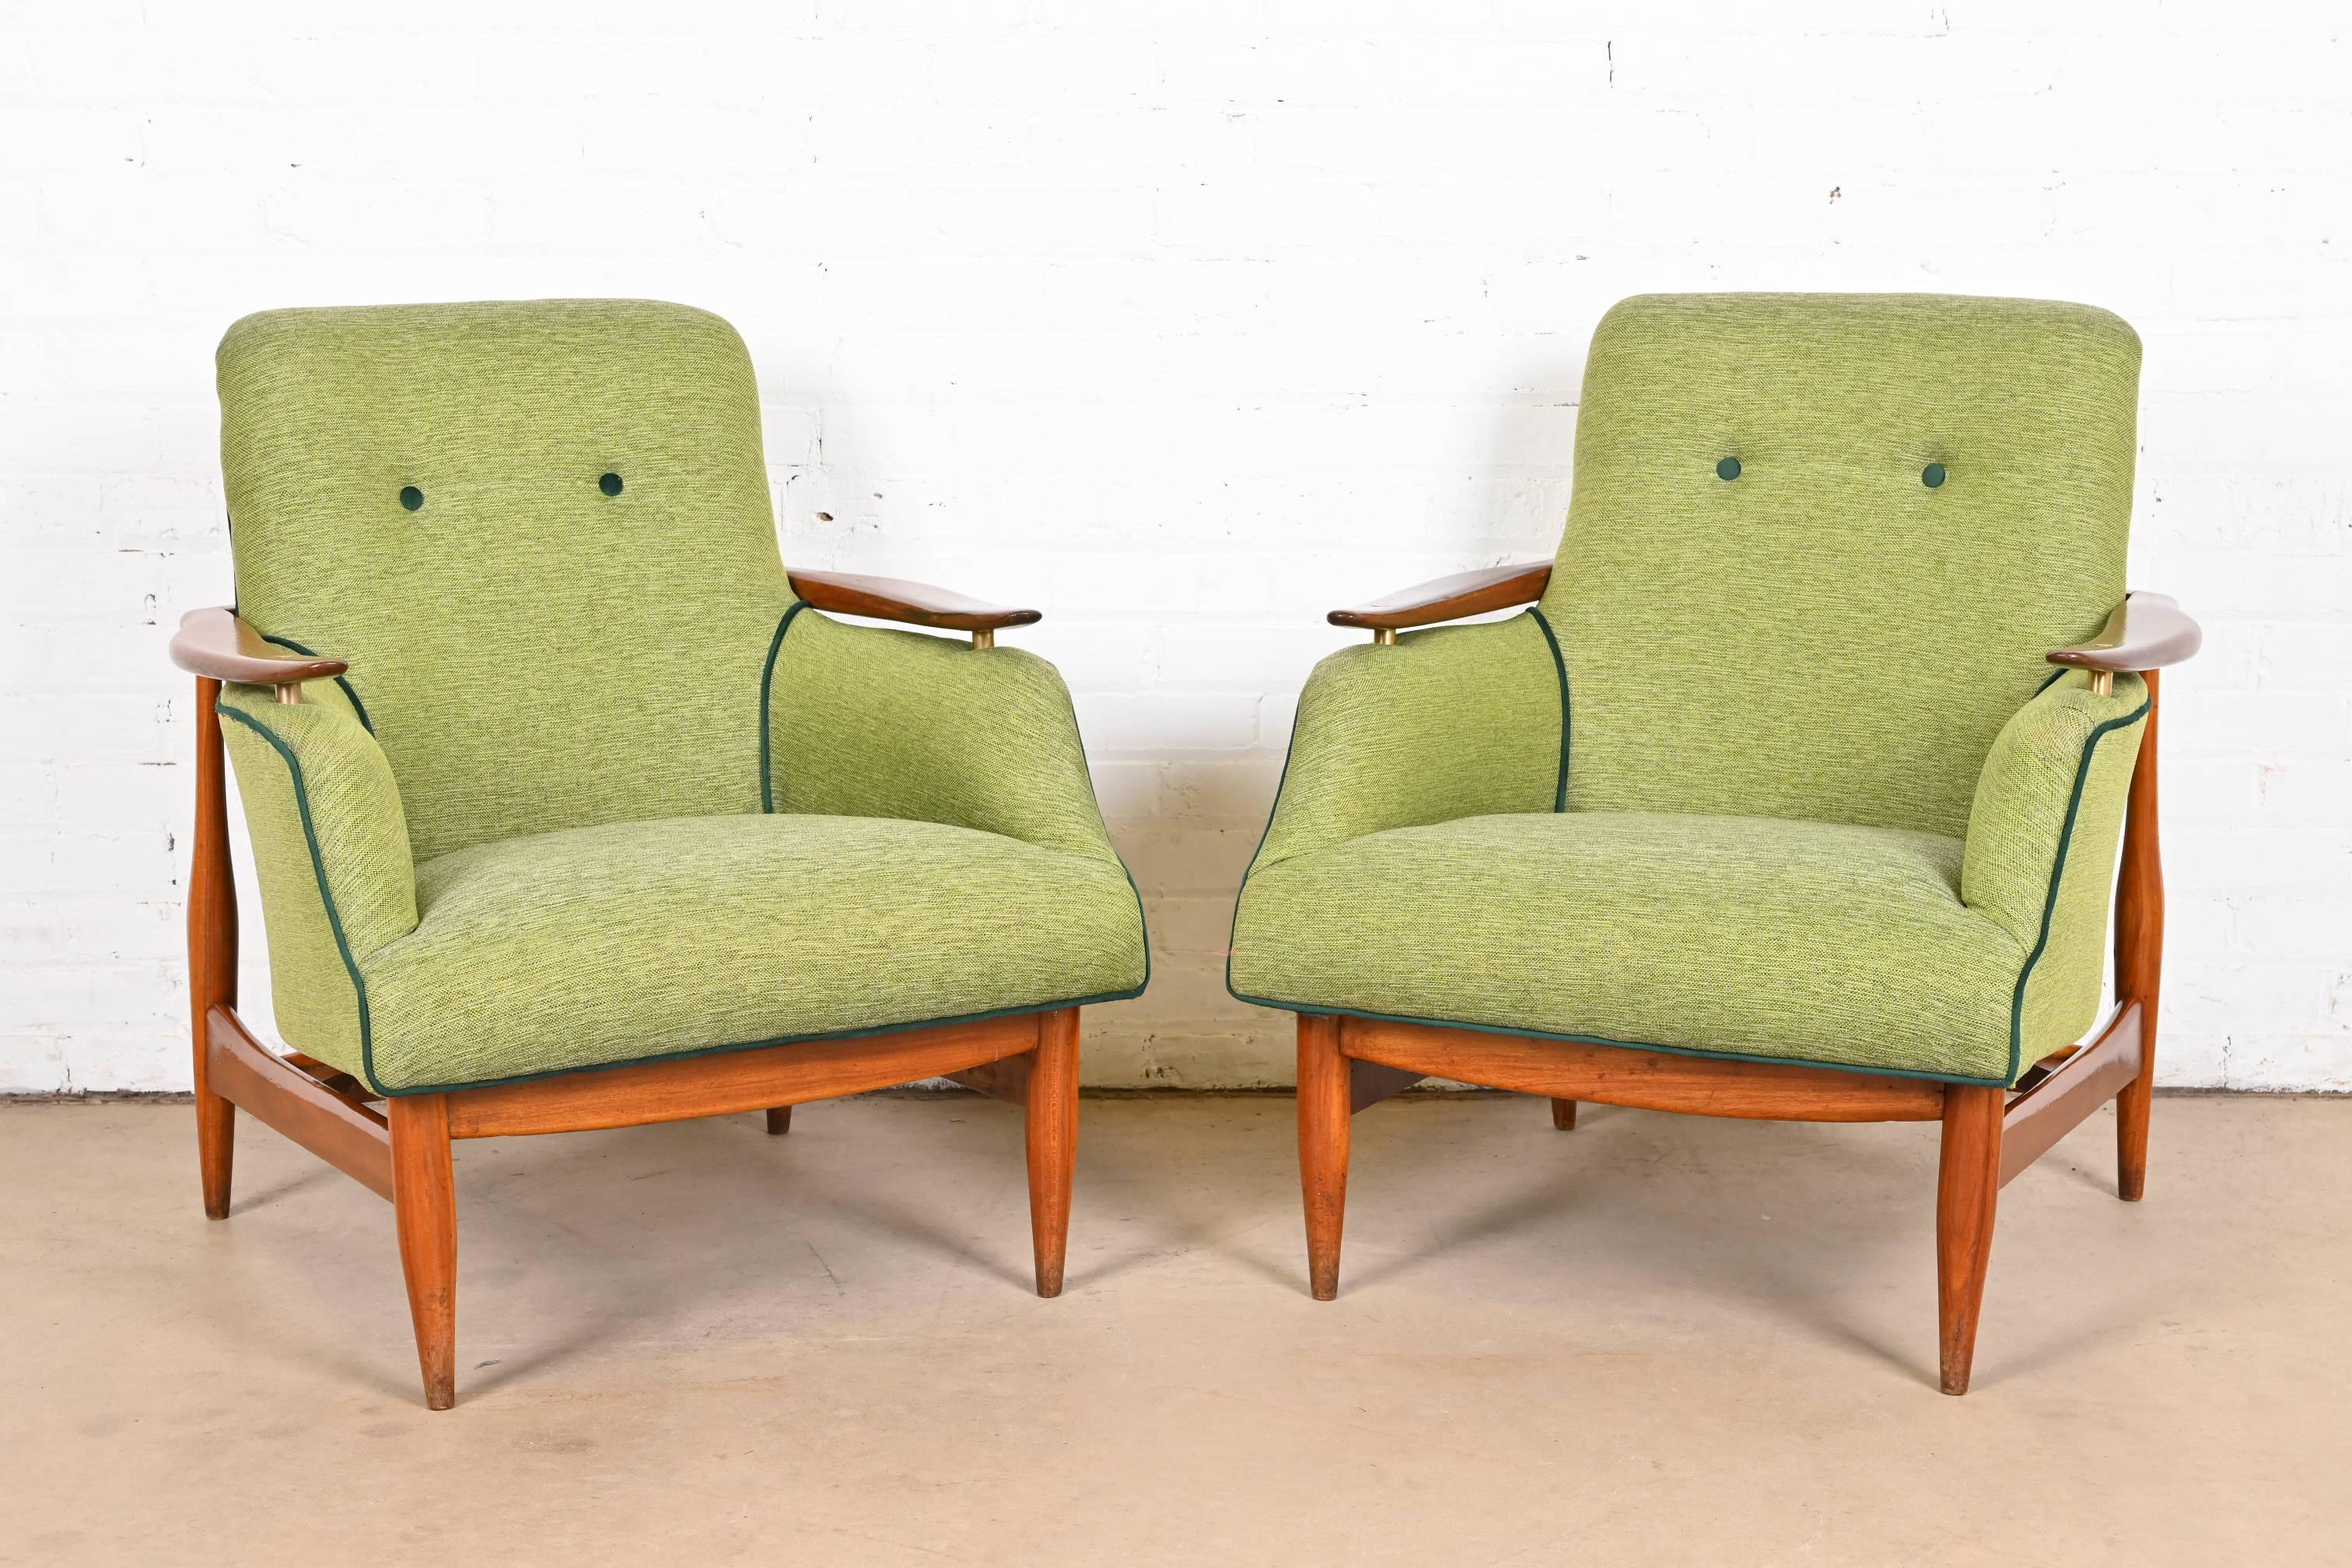 Une magnifique paire de chaises de salon modernes danoises du milieu du siècle

Attribué à Finn Juhls

Danemark, années 1950

Cadre en teck sculpté et accents en laiton, avec sièges rembourrés verts et dossiers tuftés.

Dimensions : 27 